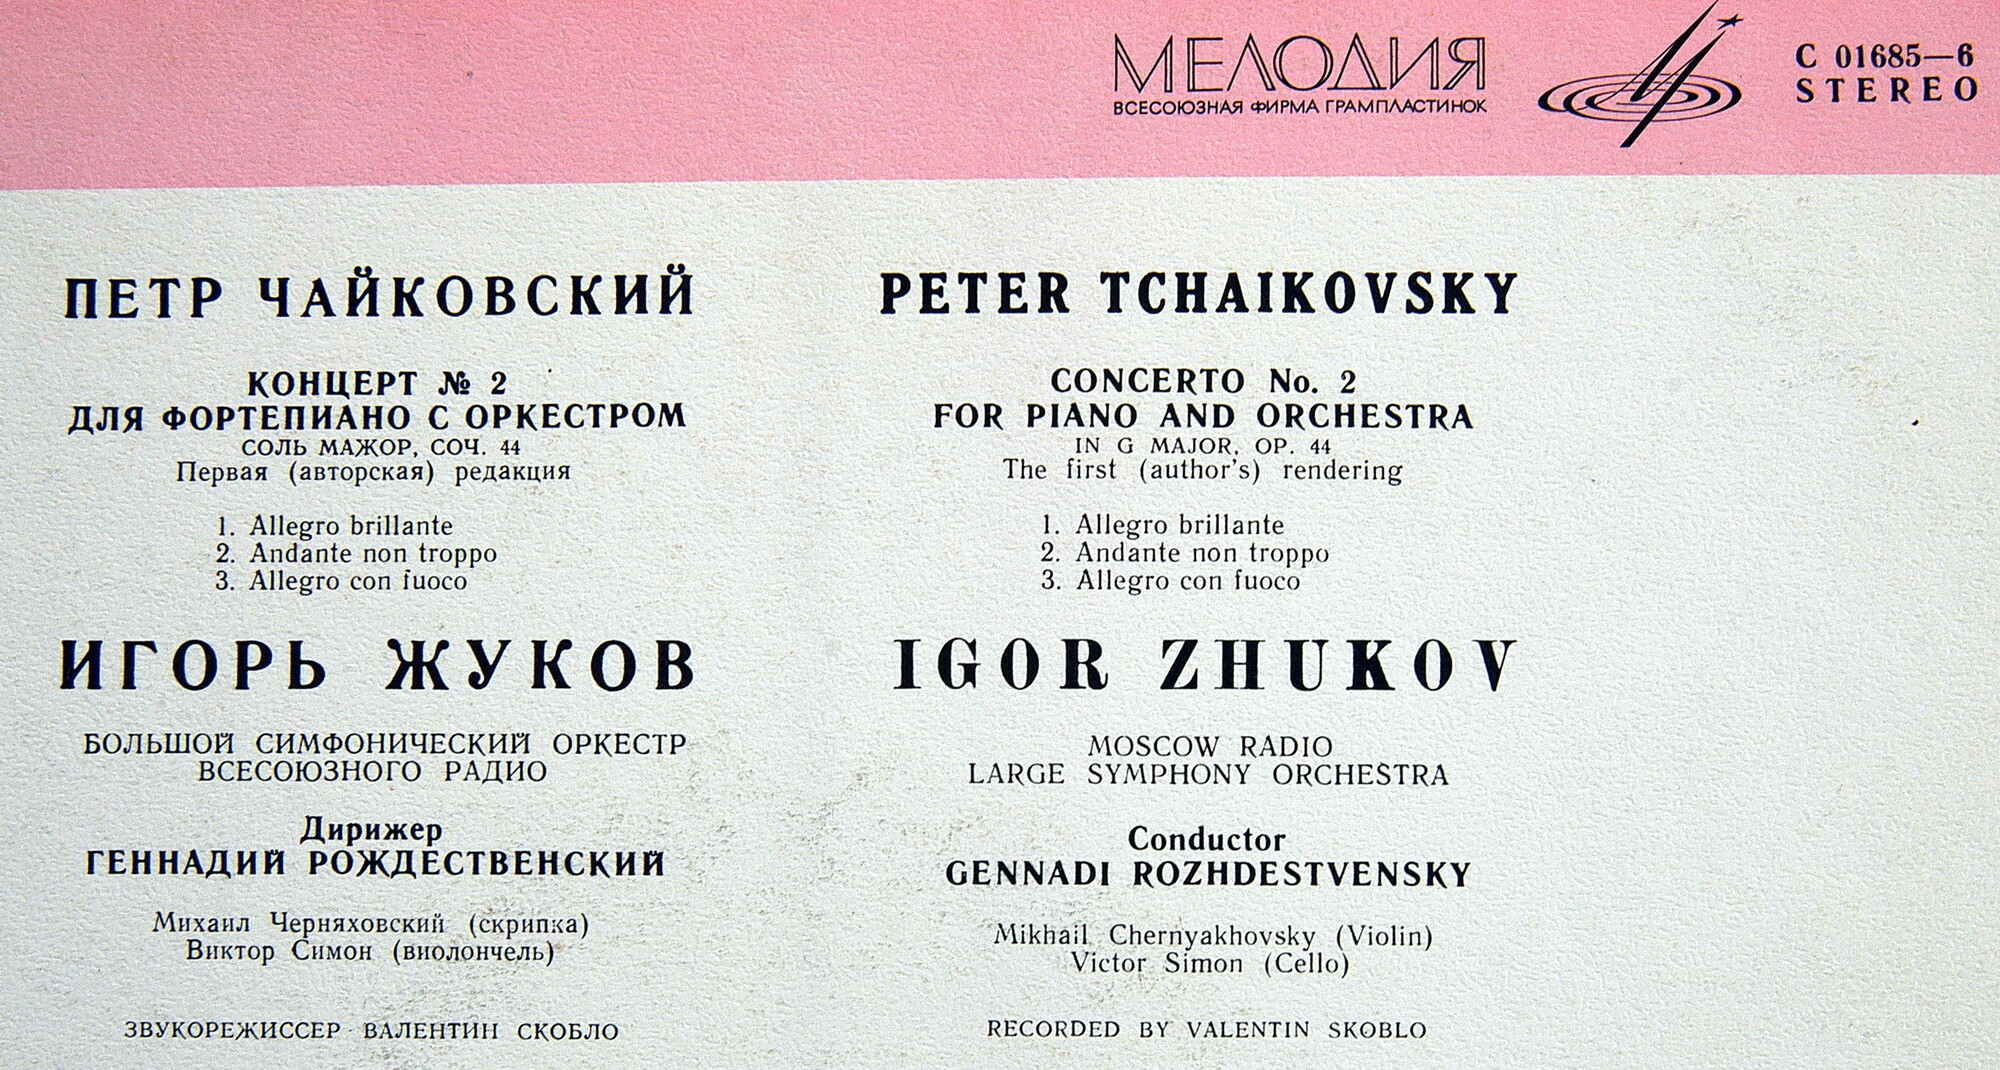 П. Чайковский: Концерт № 2 для ф-но с оркестром (Игорь Жуков)